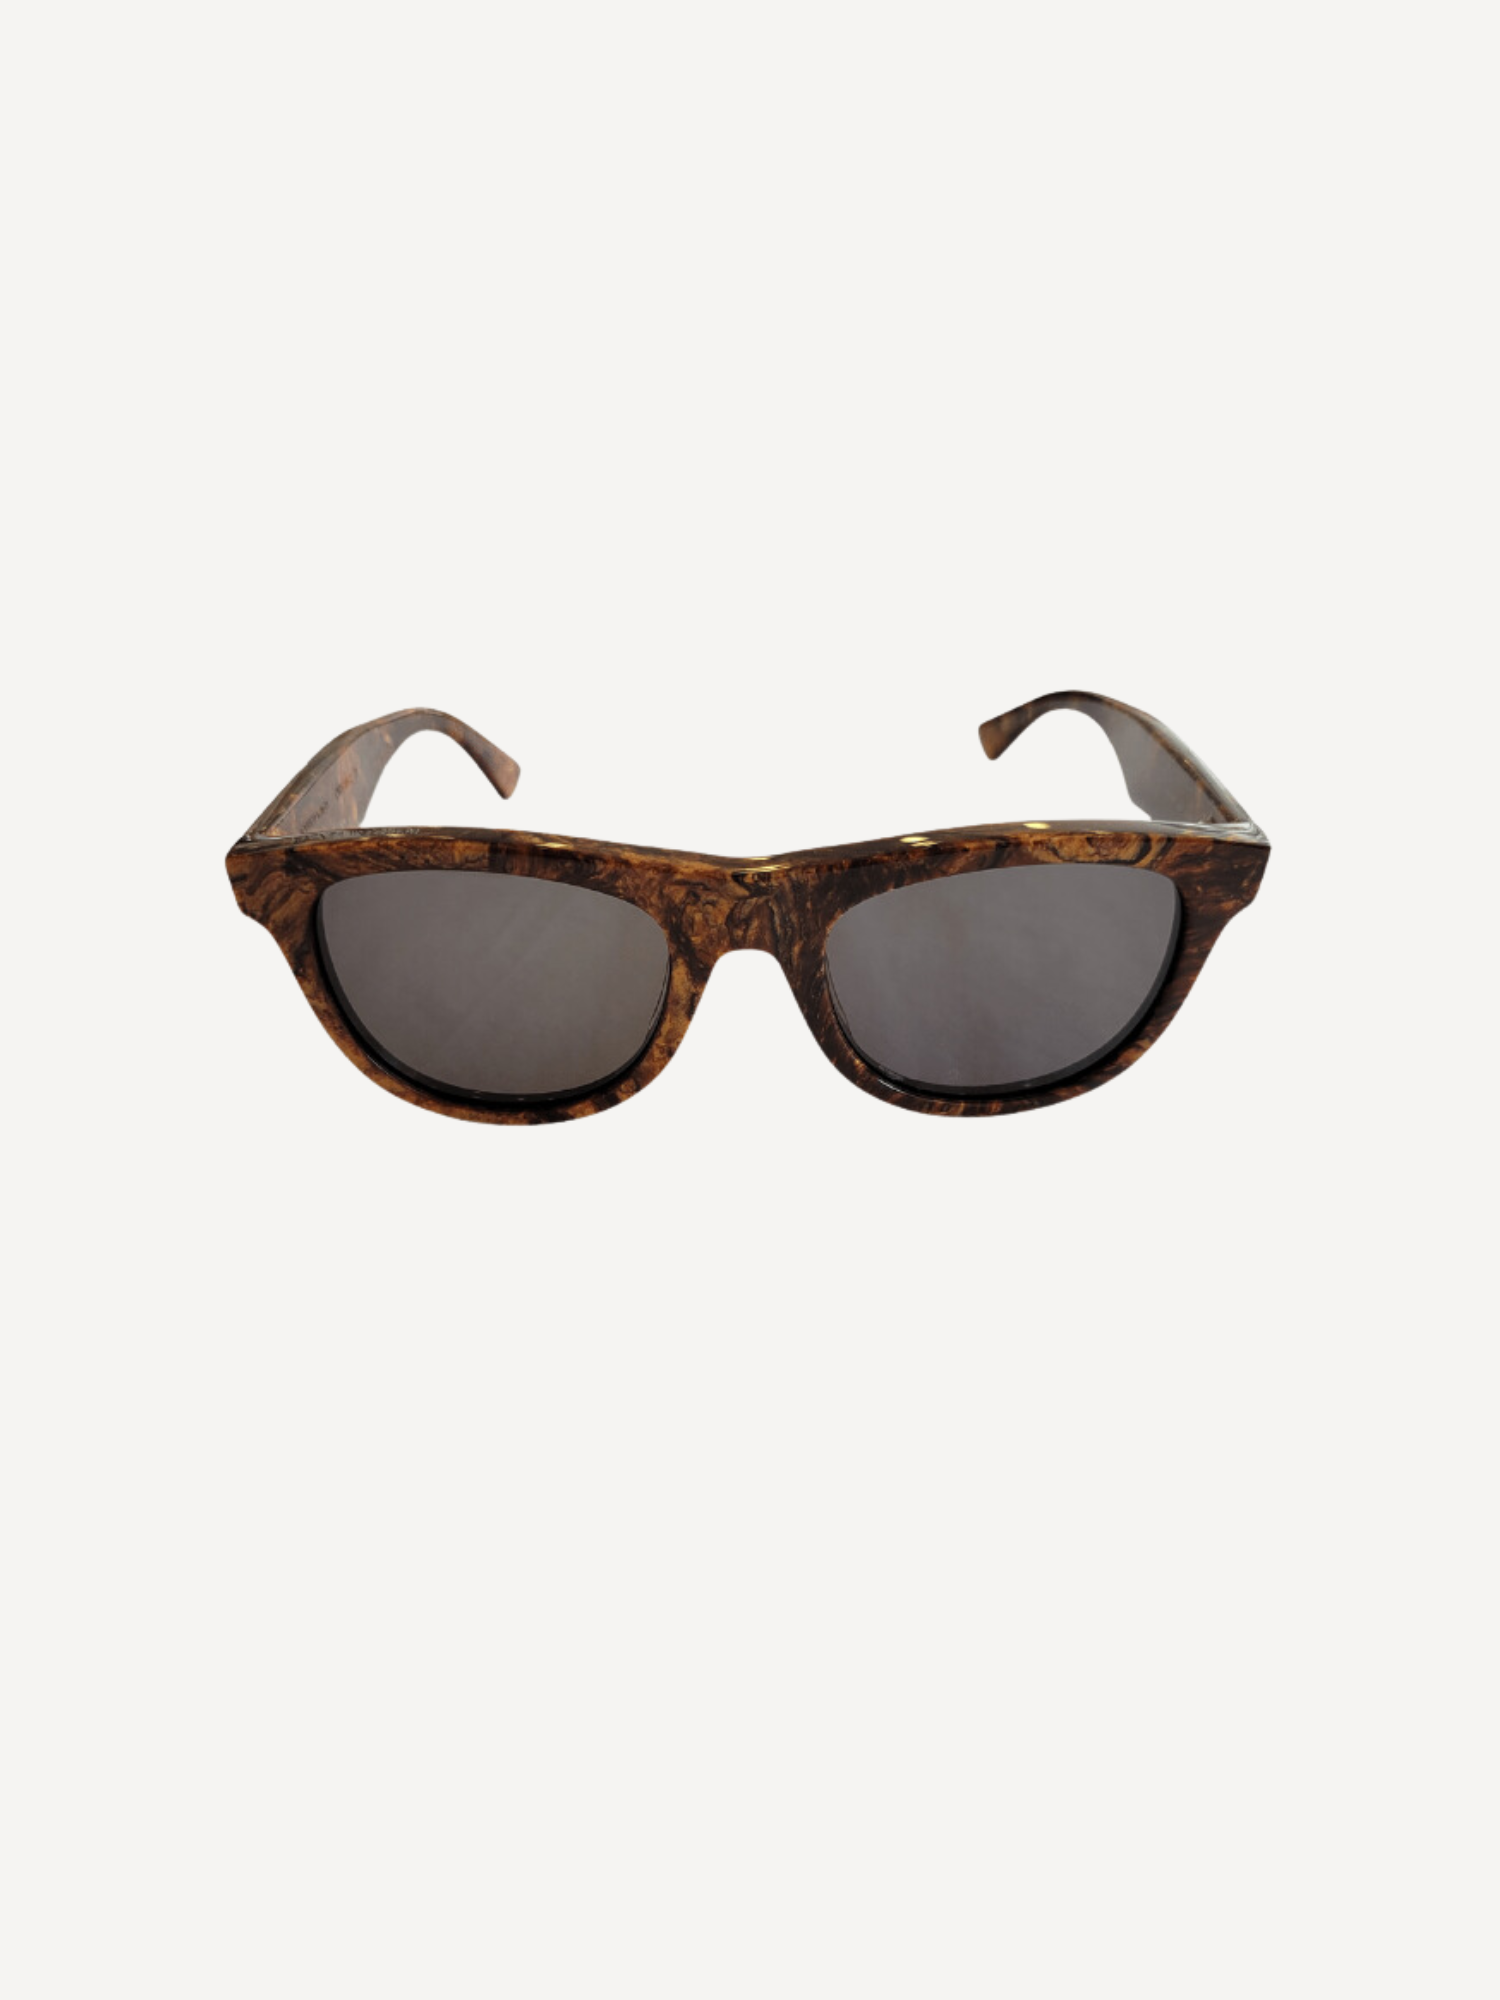 Bottega Veneta Sunglasses Bronze/Grey